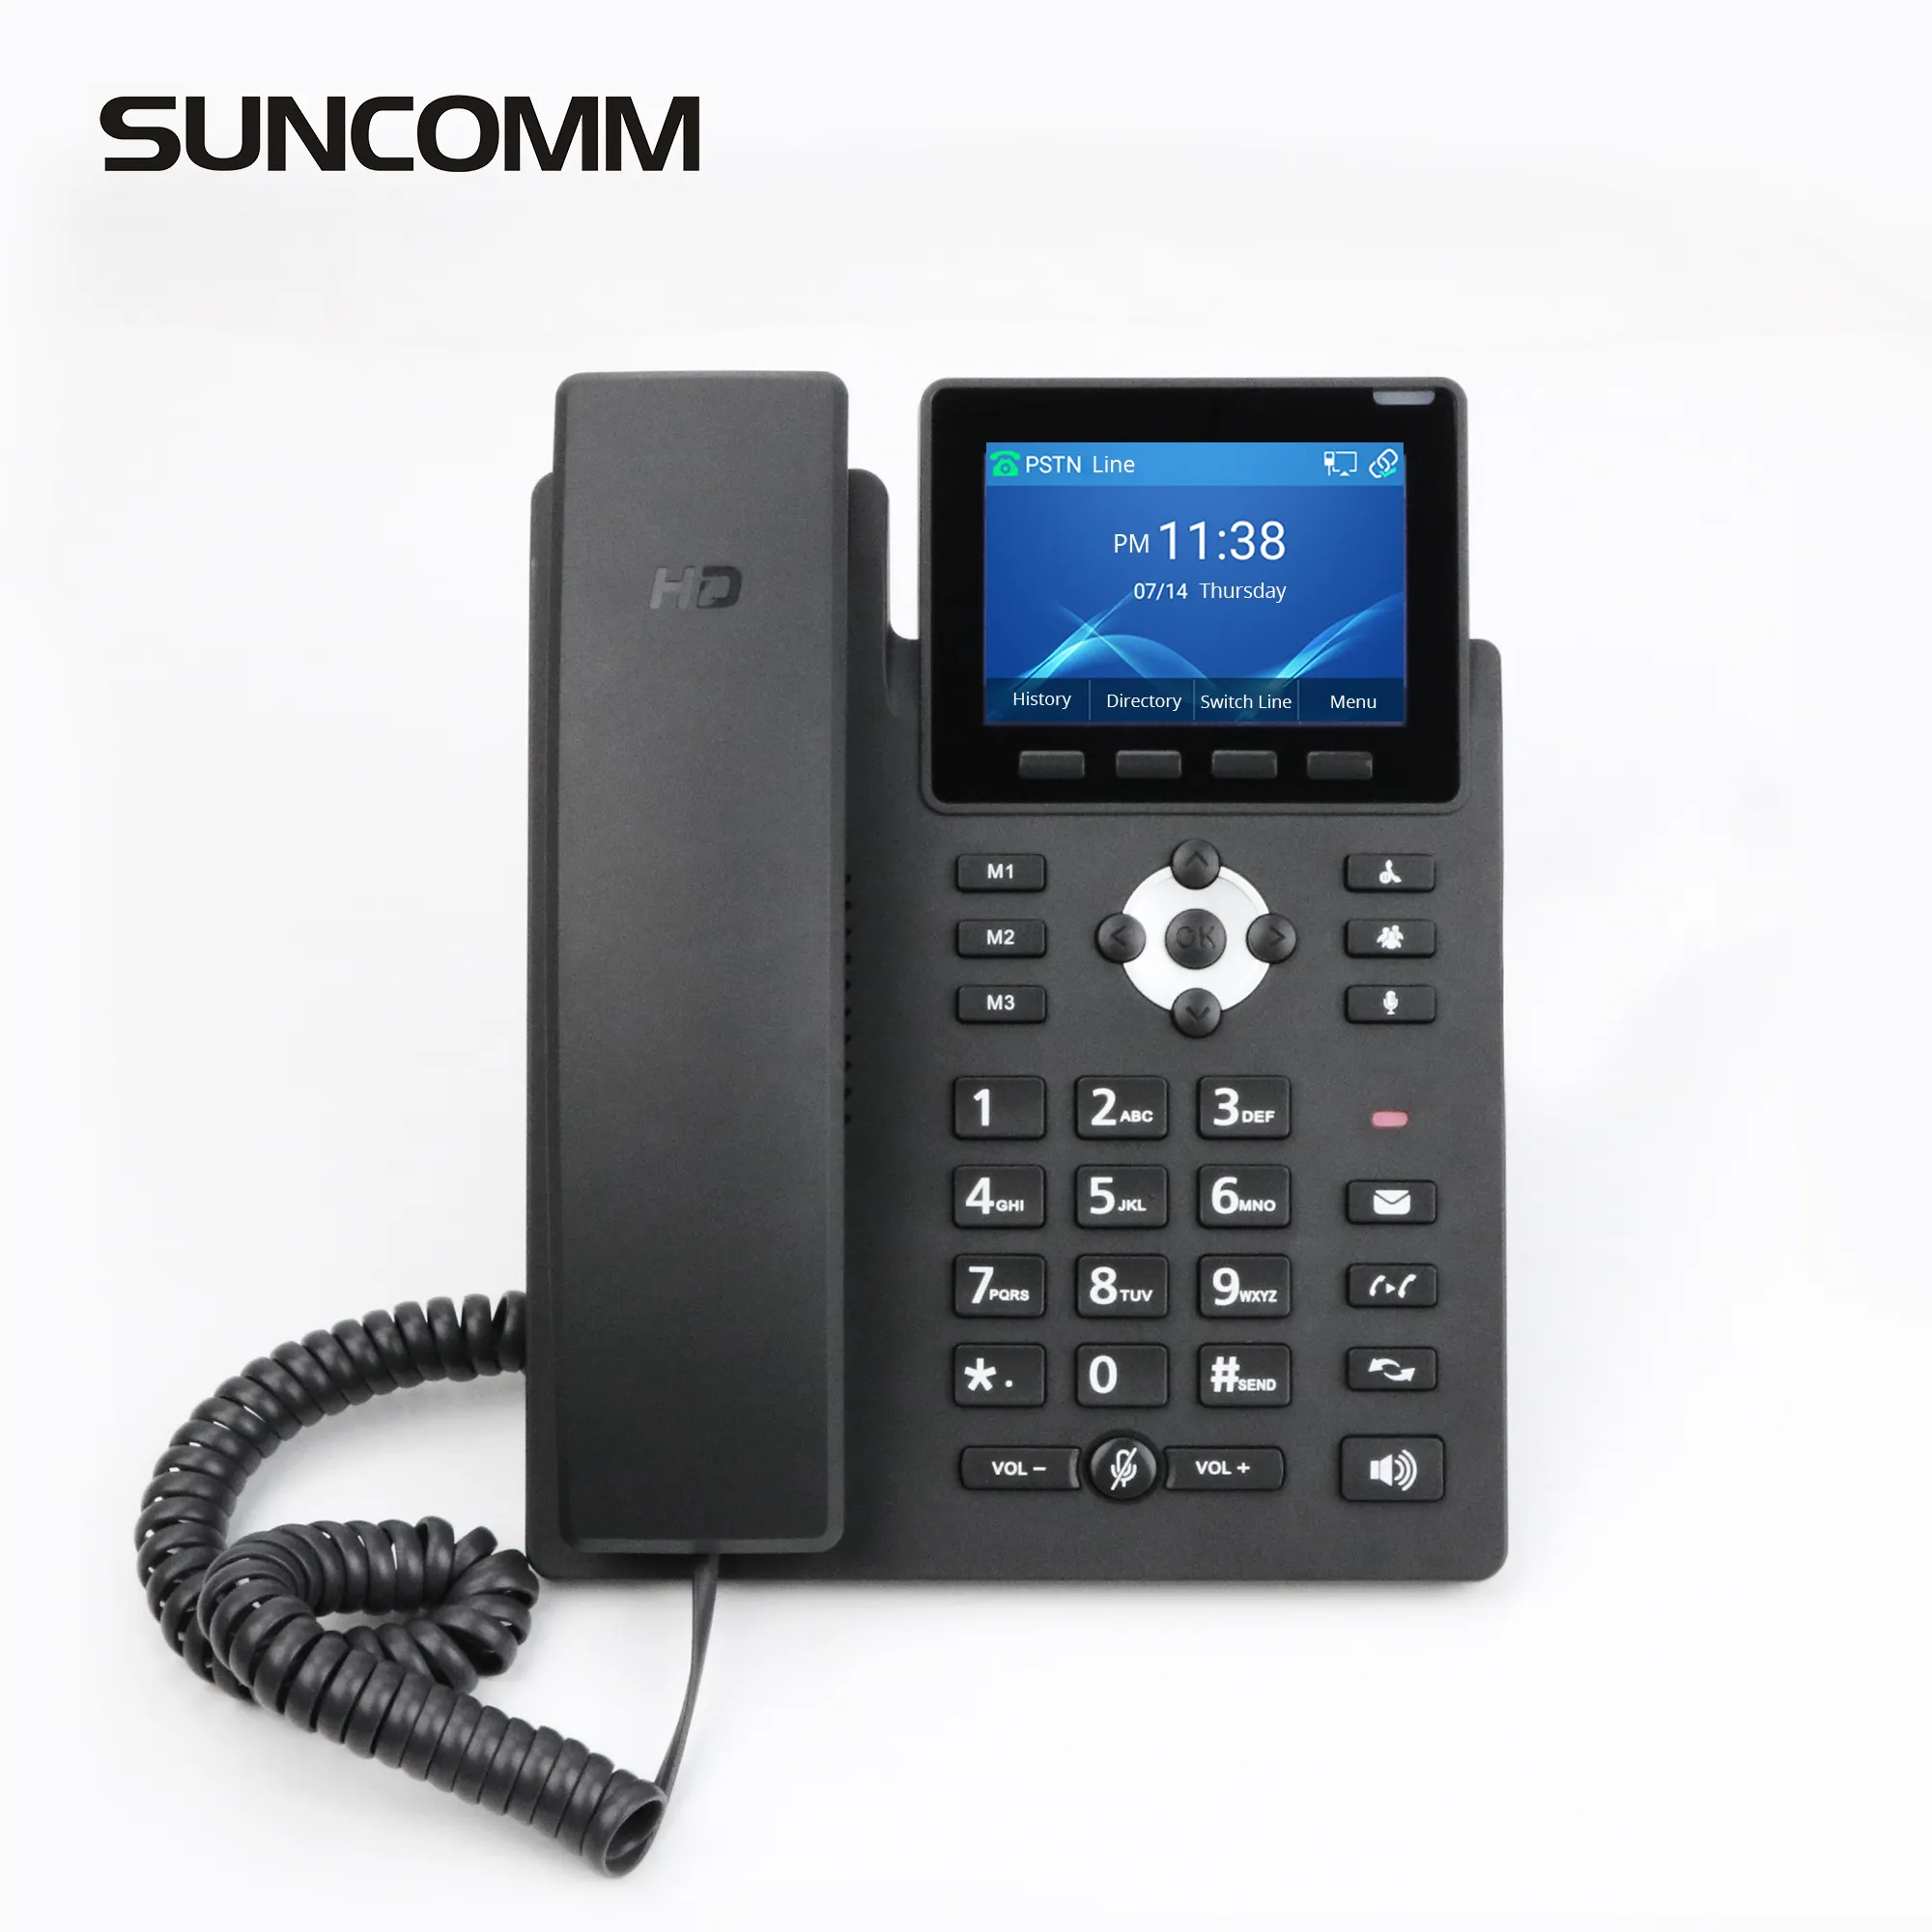 SUNCOMM SC135 3.5 इंच रंग स्क्रीन घूंट फोन एंड्रॉयड वाईफ़ाई 2.4G रंग स्क्रीन POE वीओआईपी घूंट आईपी फोन का समर्थन करता है